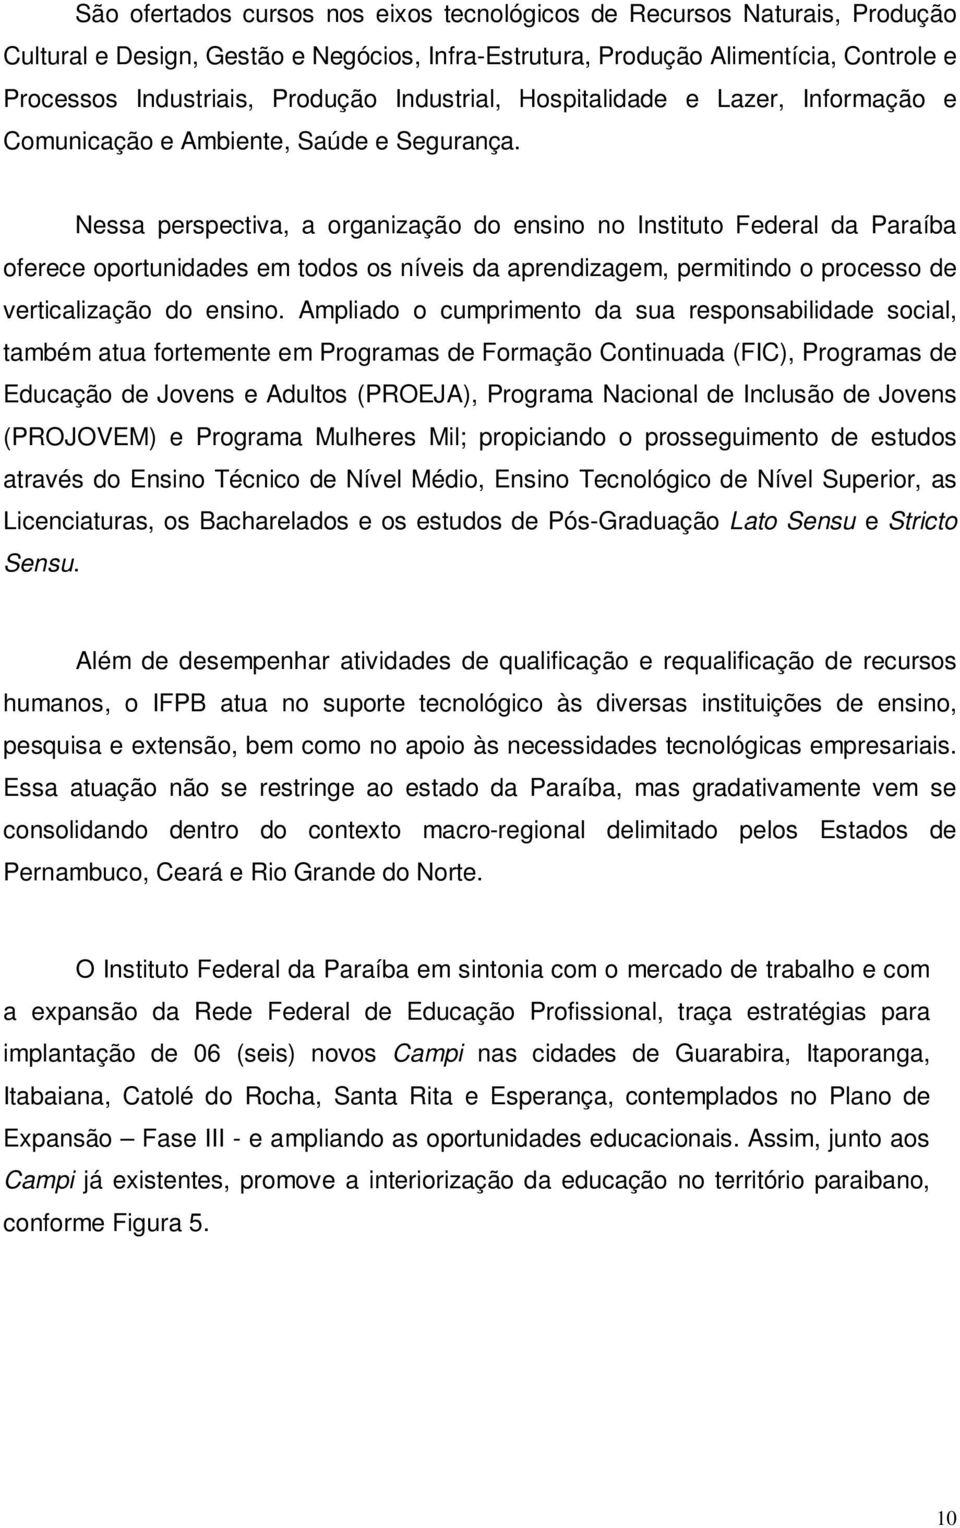 Nessa perspectiva, a organização do ensino no Instituto Federal da Paraíba oferece oportunidades em todos os níveis da aprendizagem, permitindo o processo de verticalização do ensino.